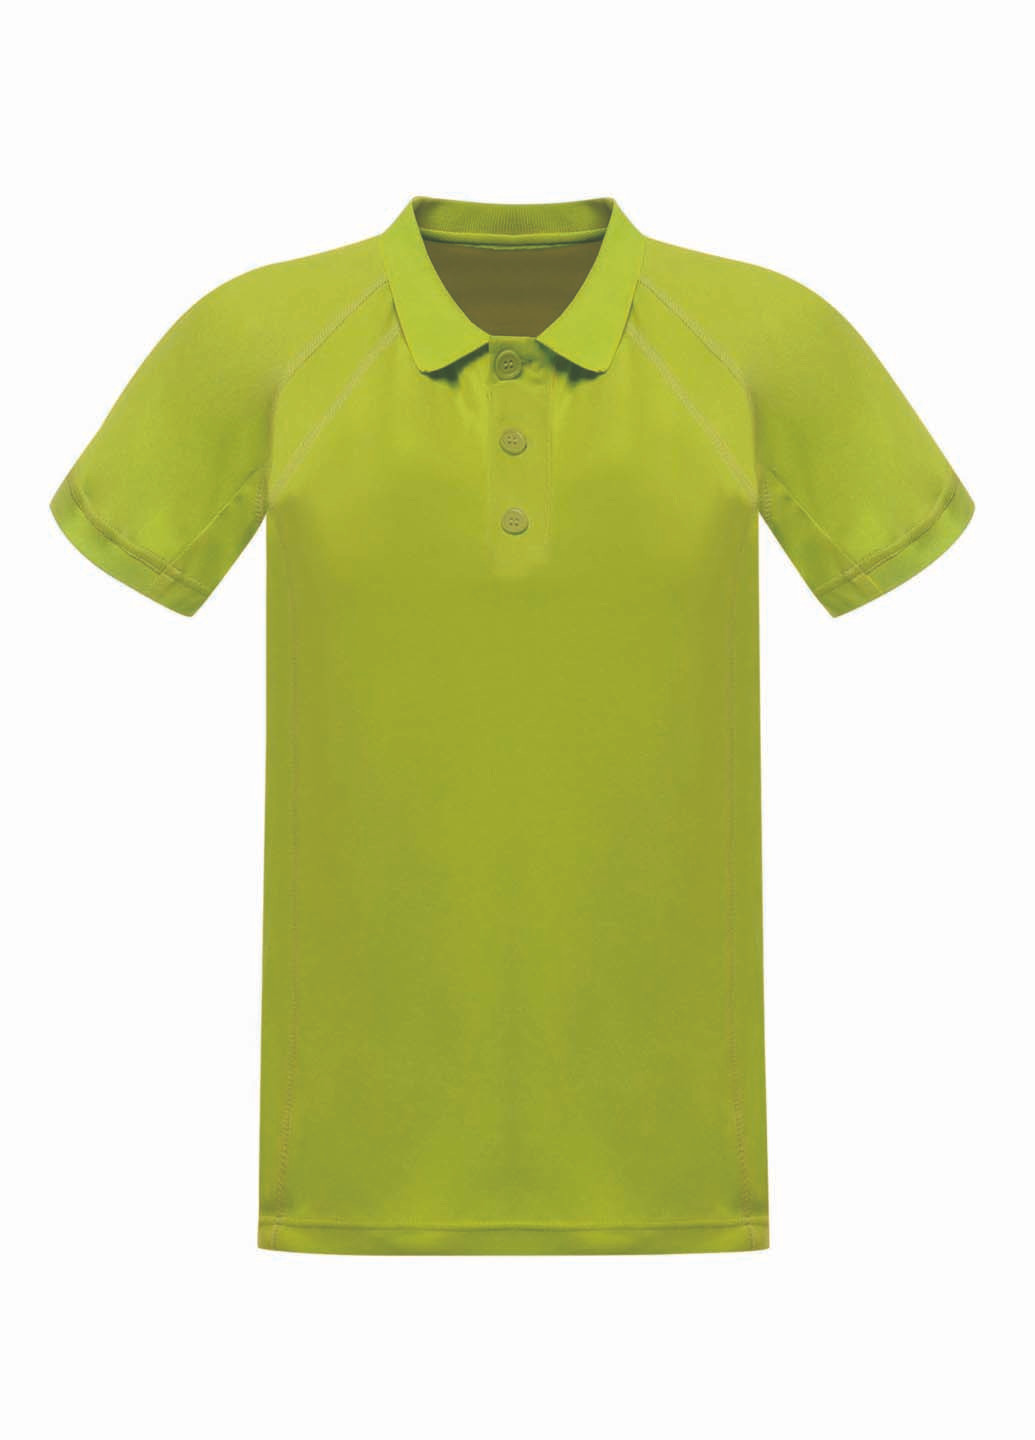 Салатовая футболка-поло для мужчин Regatta